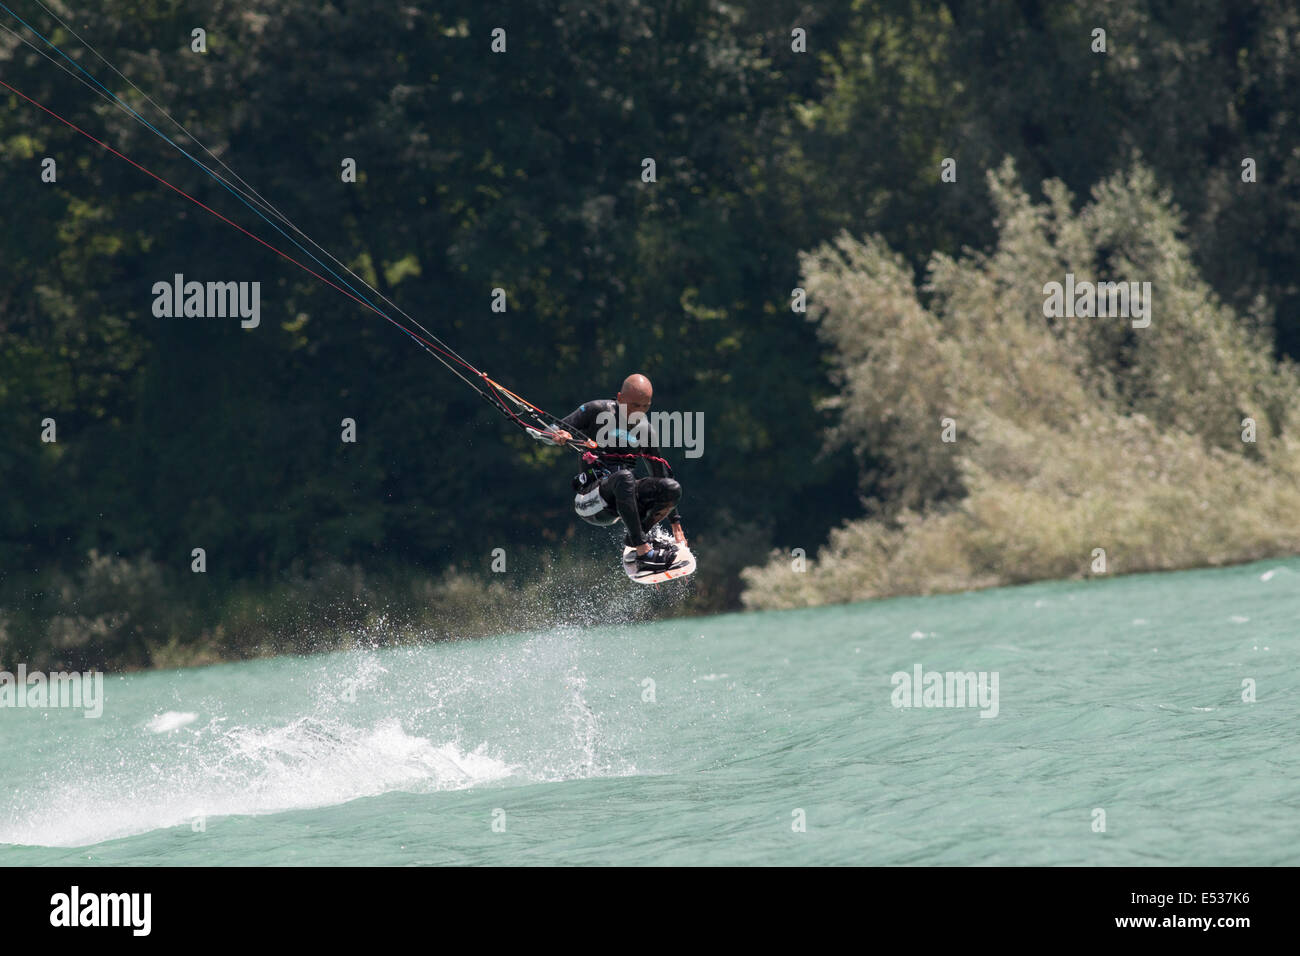 Lac DE SANTA CROCE, ITALIE - 12 juillet : kite-surfer professionnel démontrant sa capacité 2014, Juillet 12, 2014 Banque D'Images